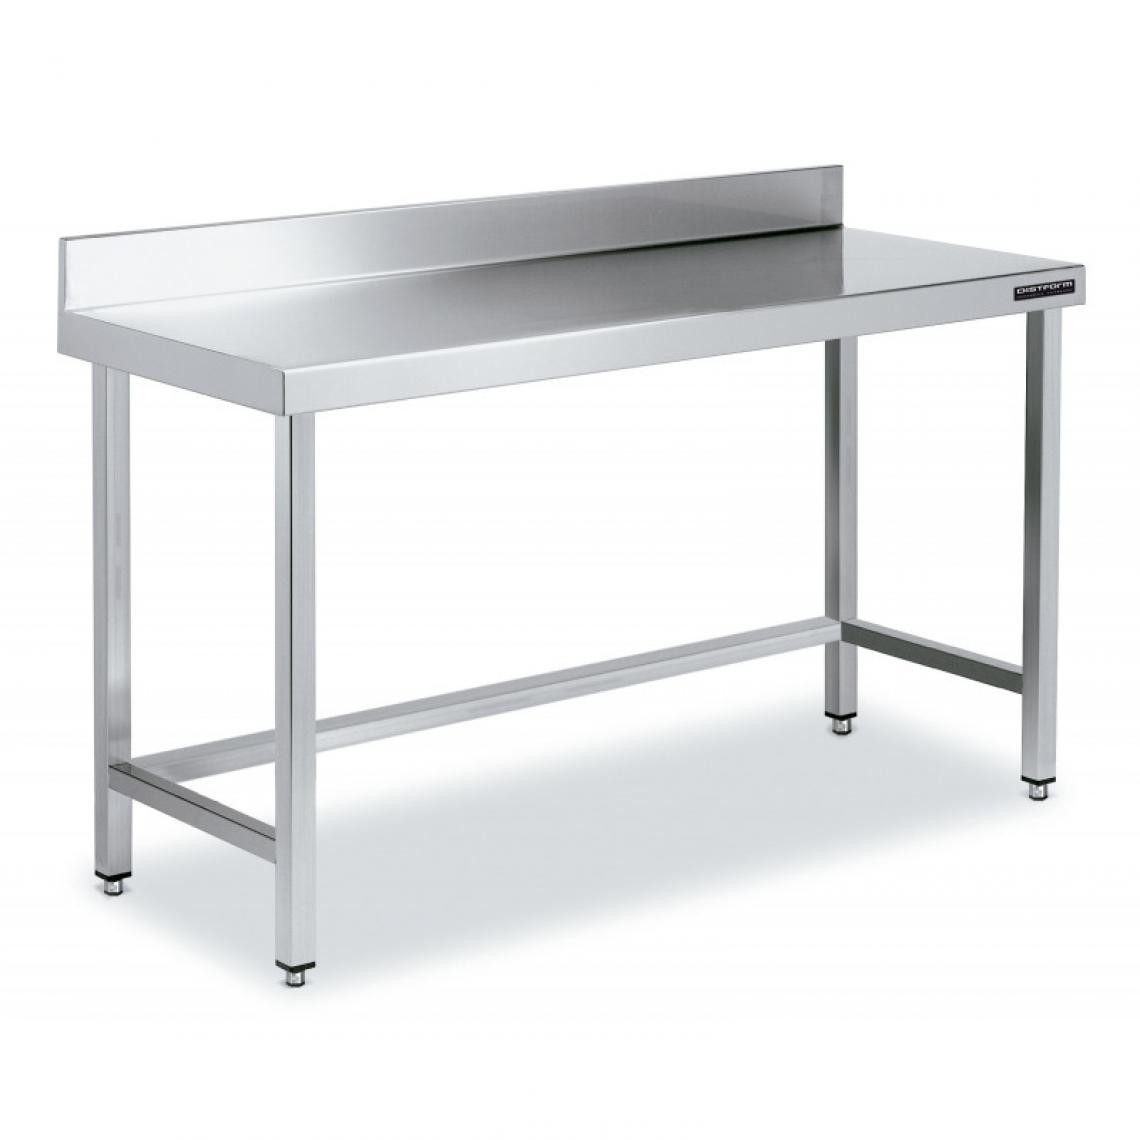 DISTFORM - Table de Travail Adossée Inox avec Renforts - Gamme 600 - Hauteur 600 - Distform - Acier inoxydable1800x600 - Tables à manger